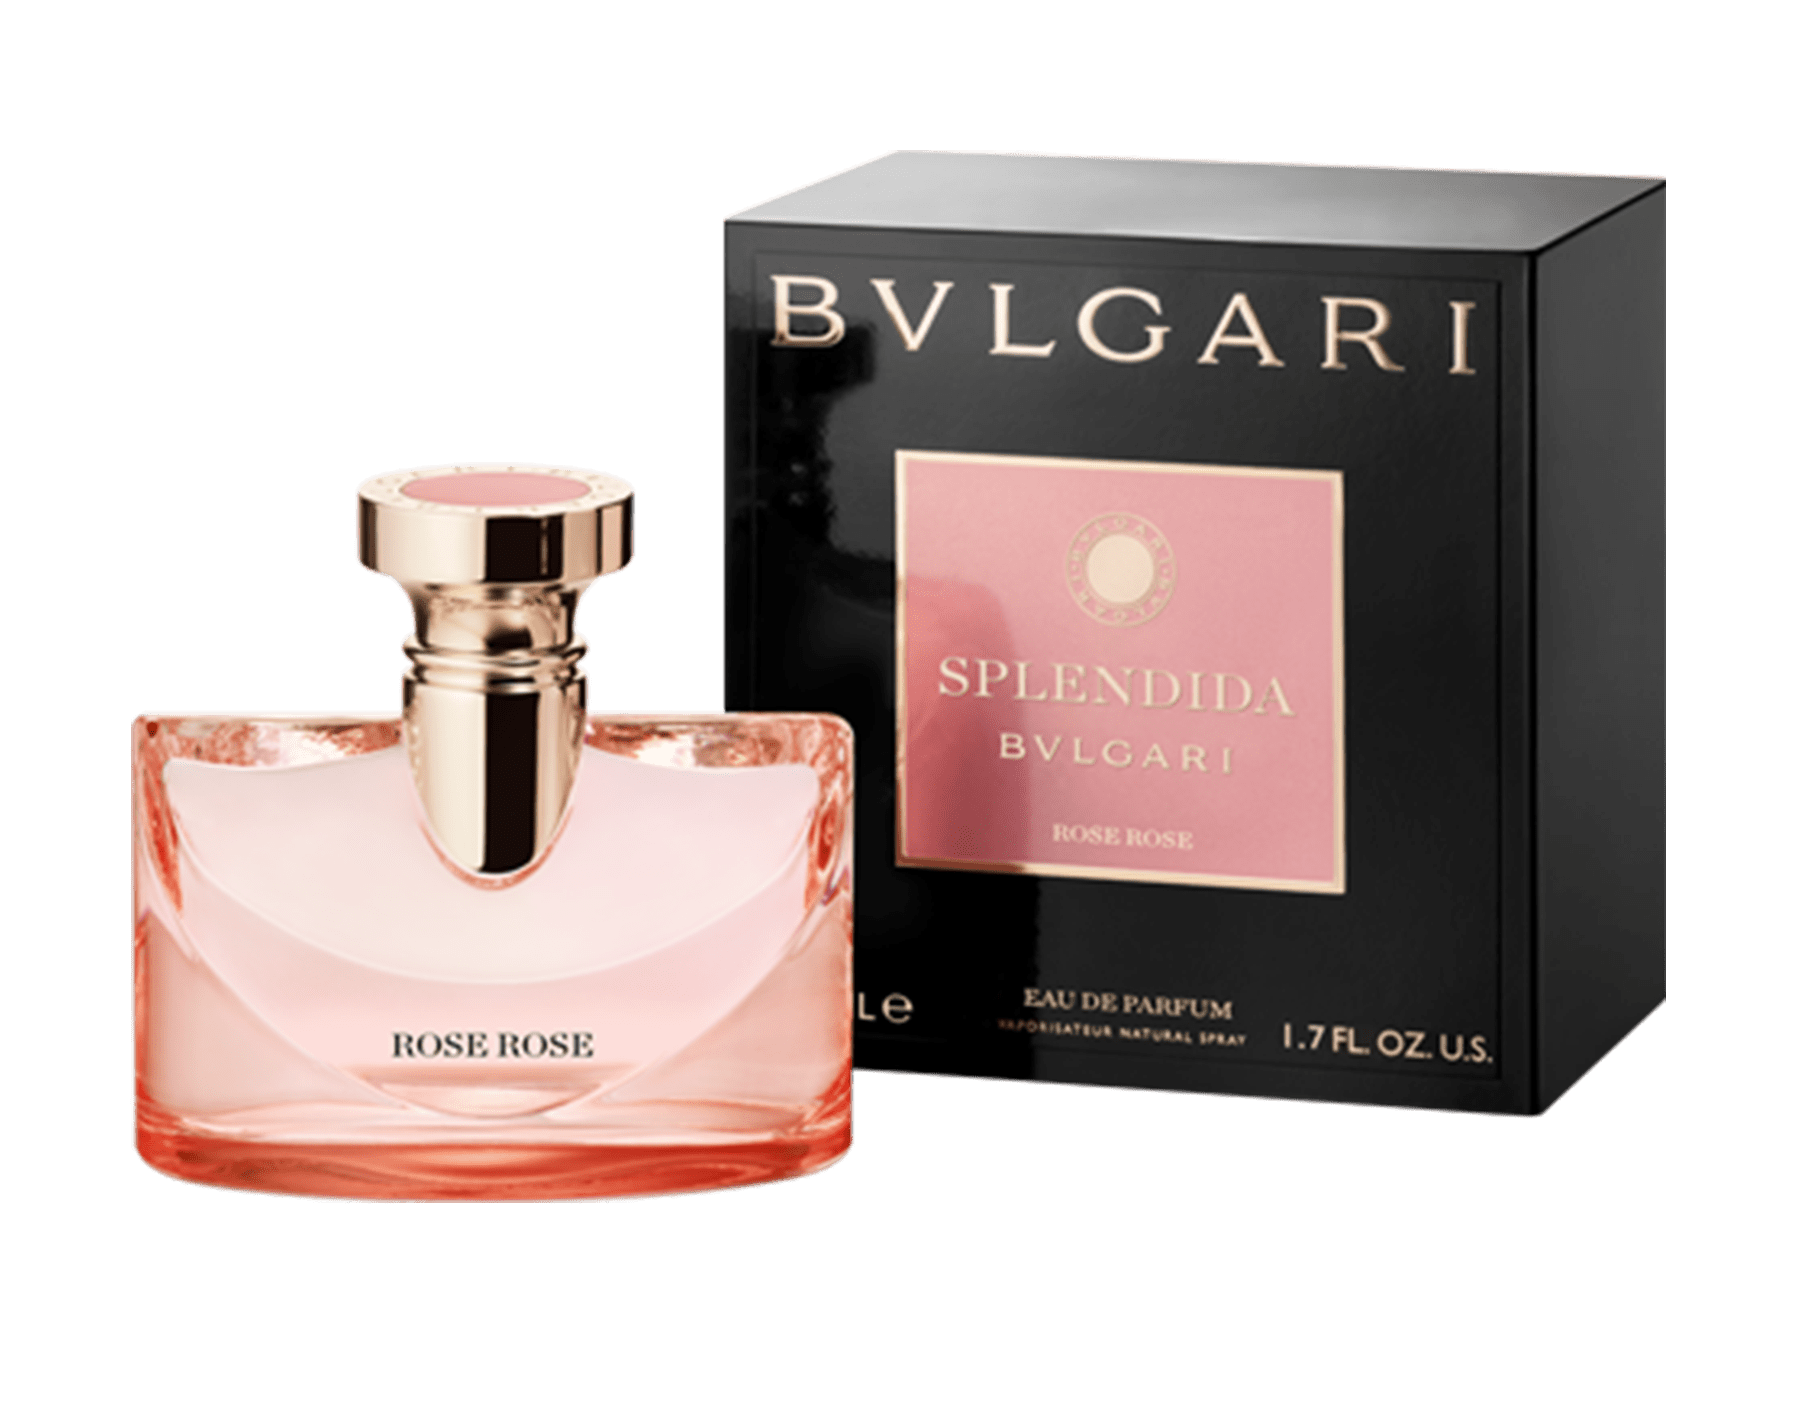 bvlgari perfume splendida